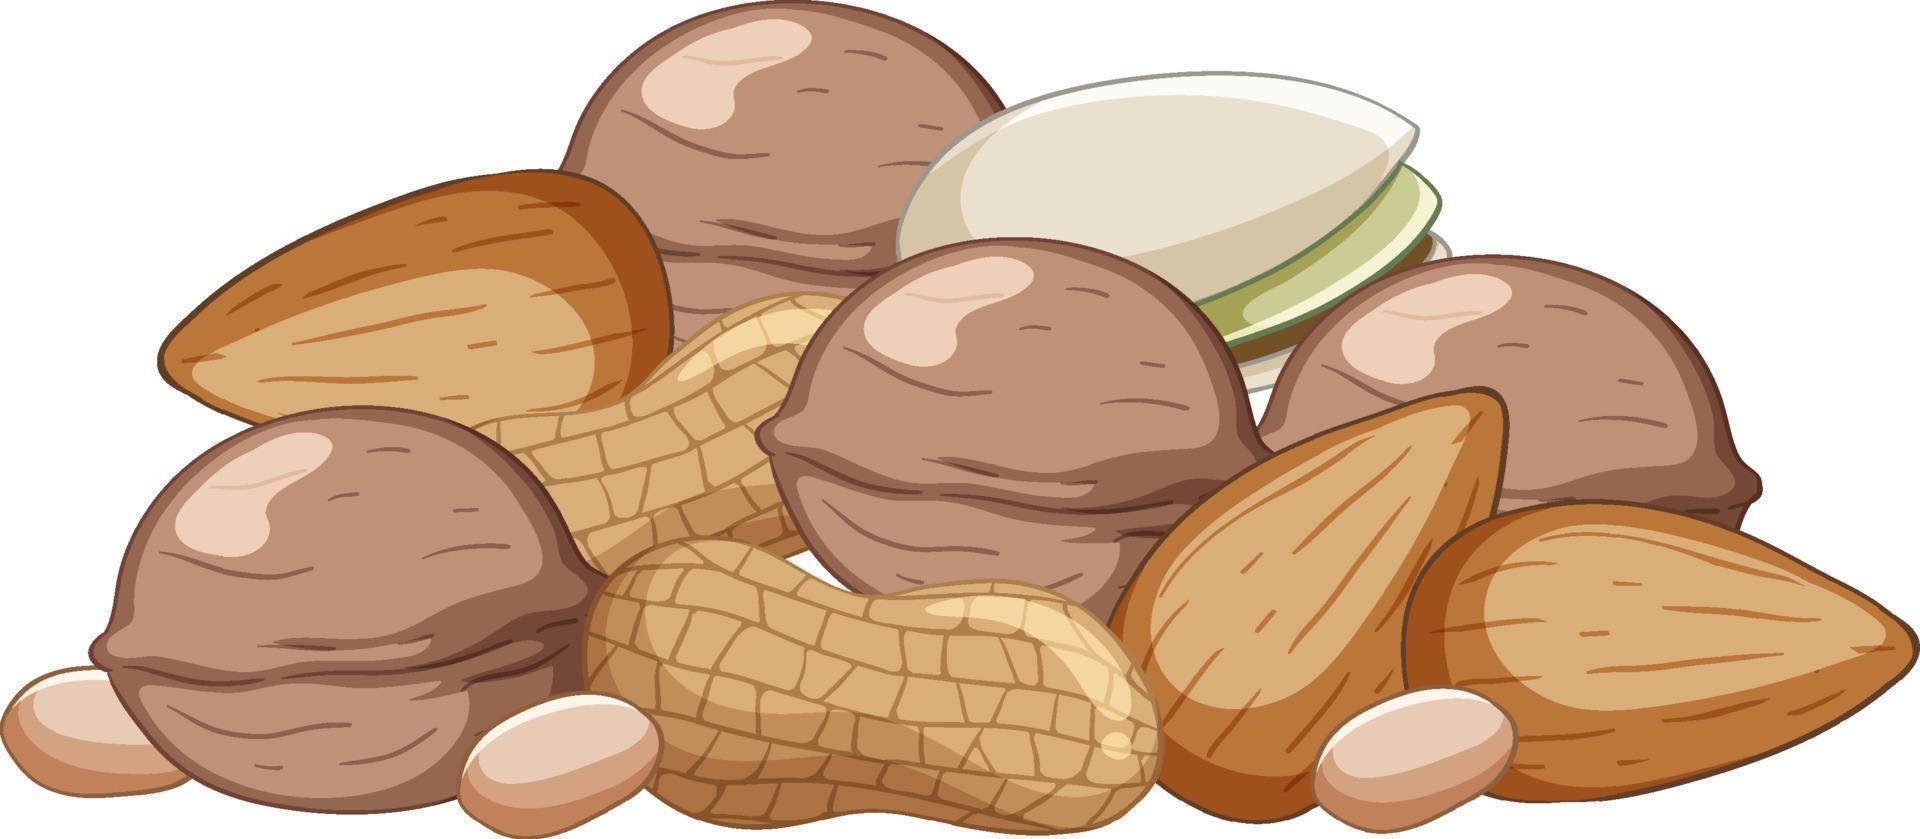 molte noci mandorle arachidi pistacchi stile cartone animato vettore